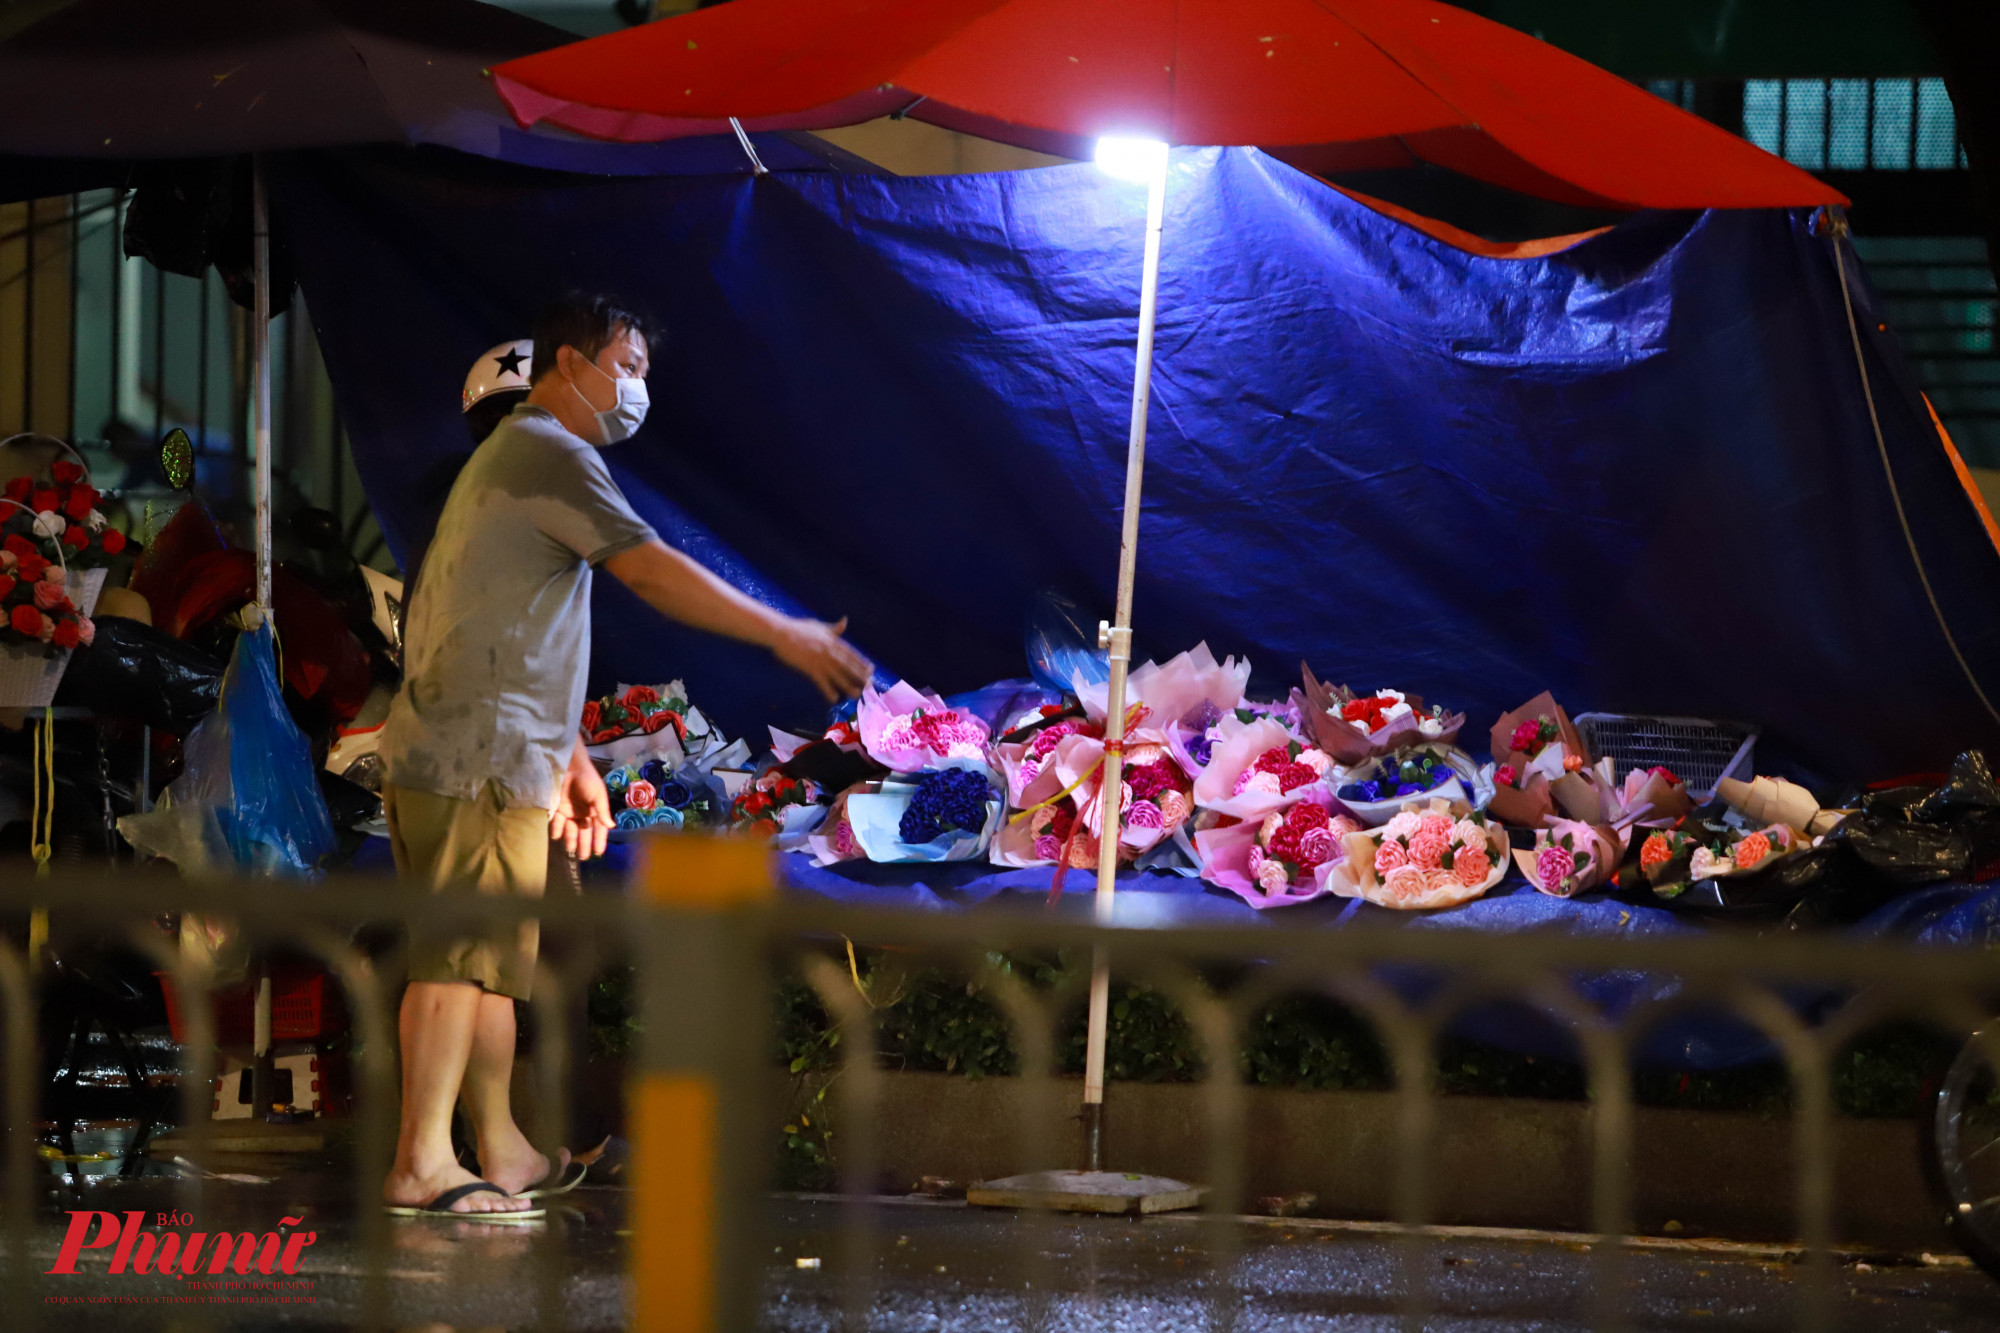 Năm nay dịch bệnh cùng thời tiết xấu nhiều ngày qua đã ảnh hưởng không nhỏ đến thị trường hoa tại TPHCM nói chung và đường Nguyễn Văn Cừ nói riêng